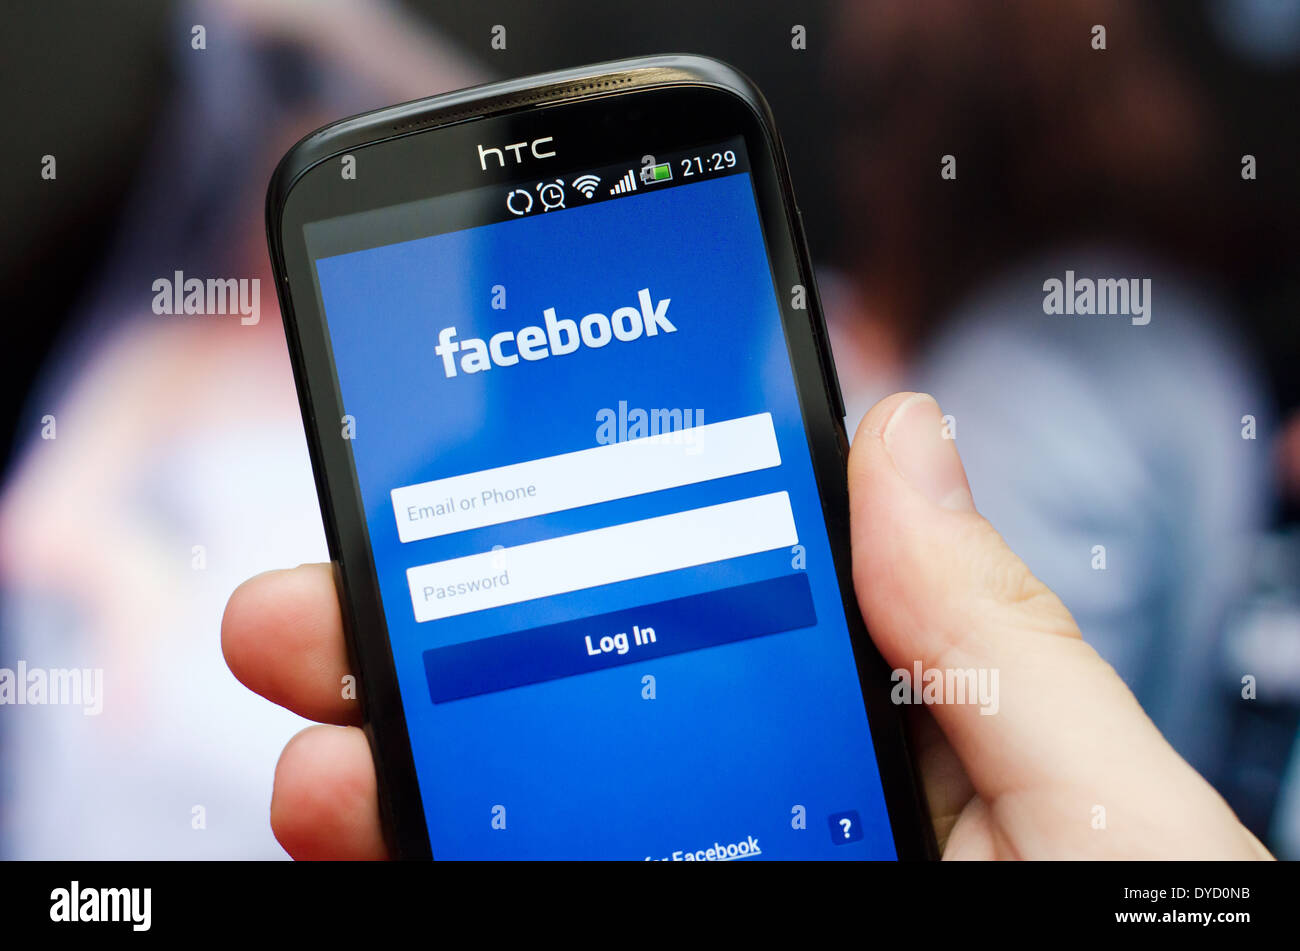 Mano azienda smartphone con il social network Facebook mobile app con interfaccia in inglese Foto Stock